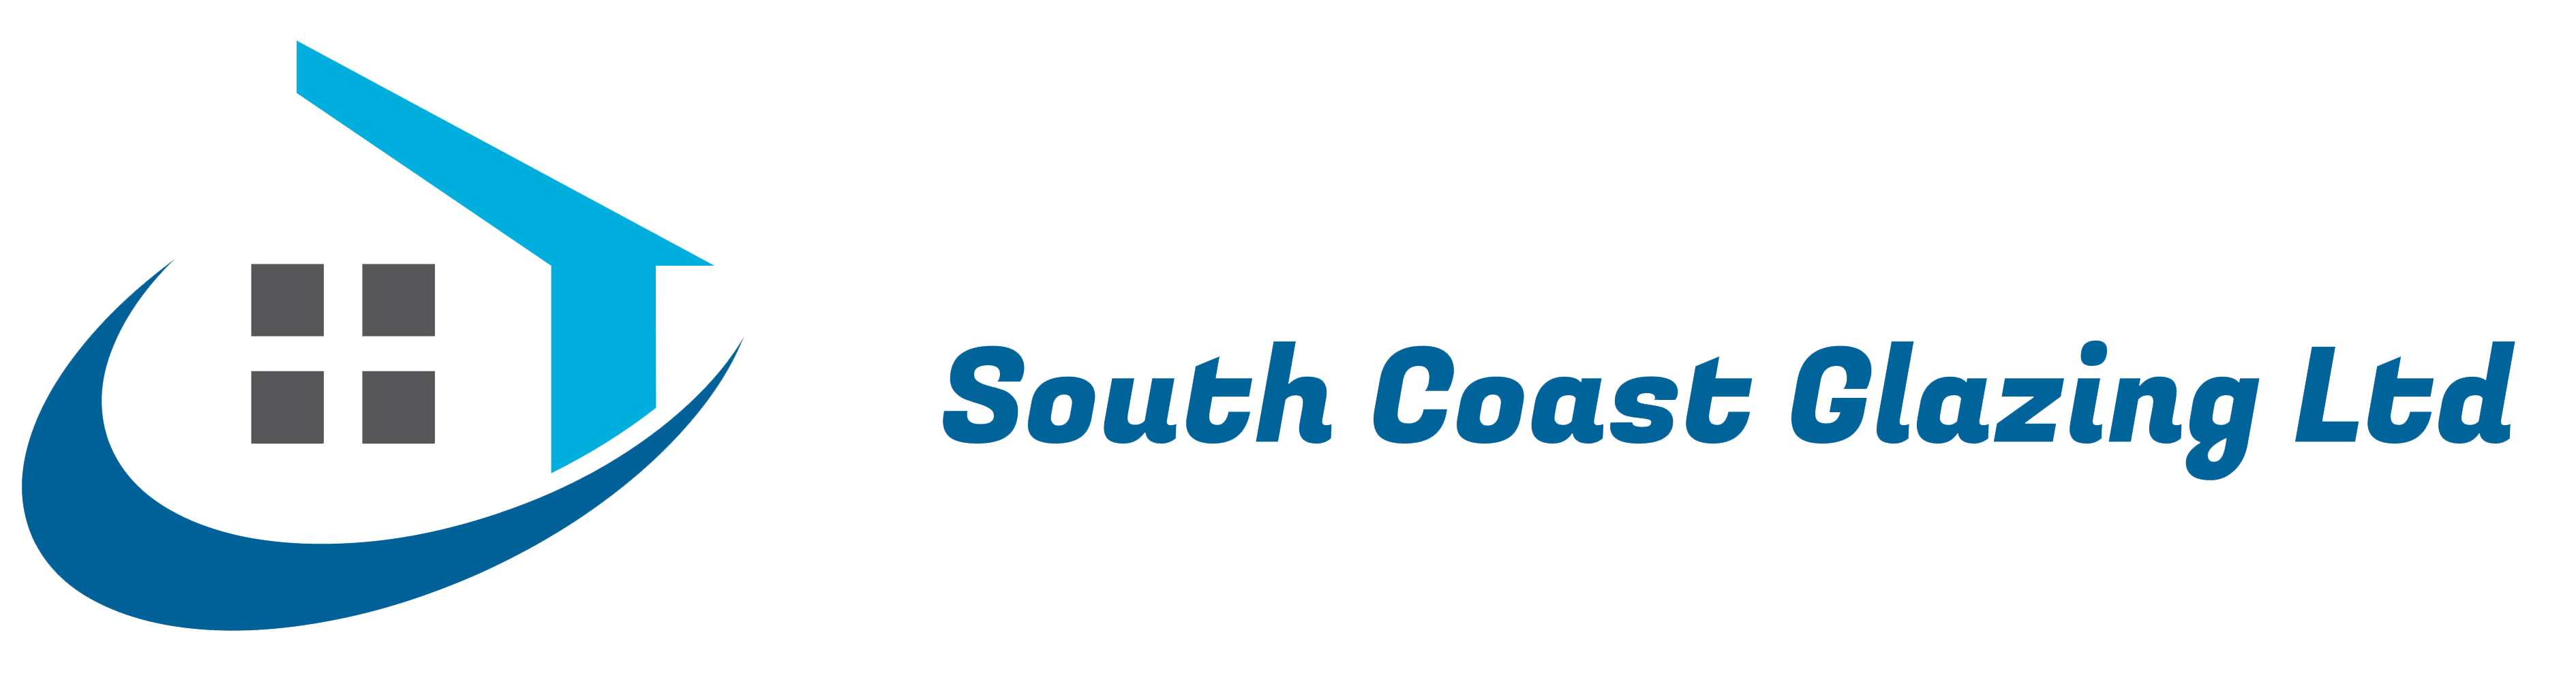 South Coast Glazing Logo image